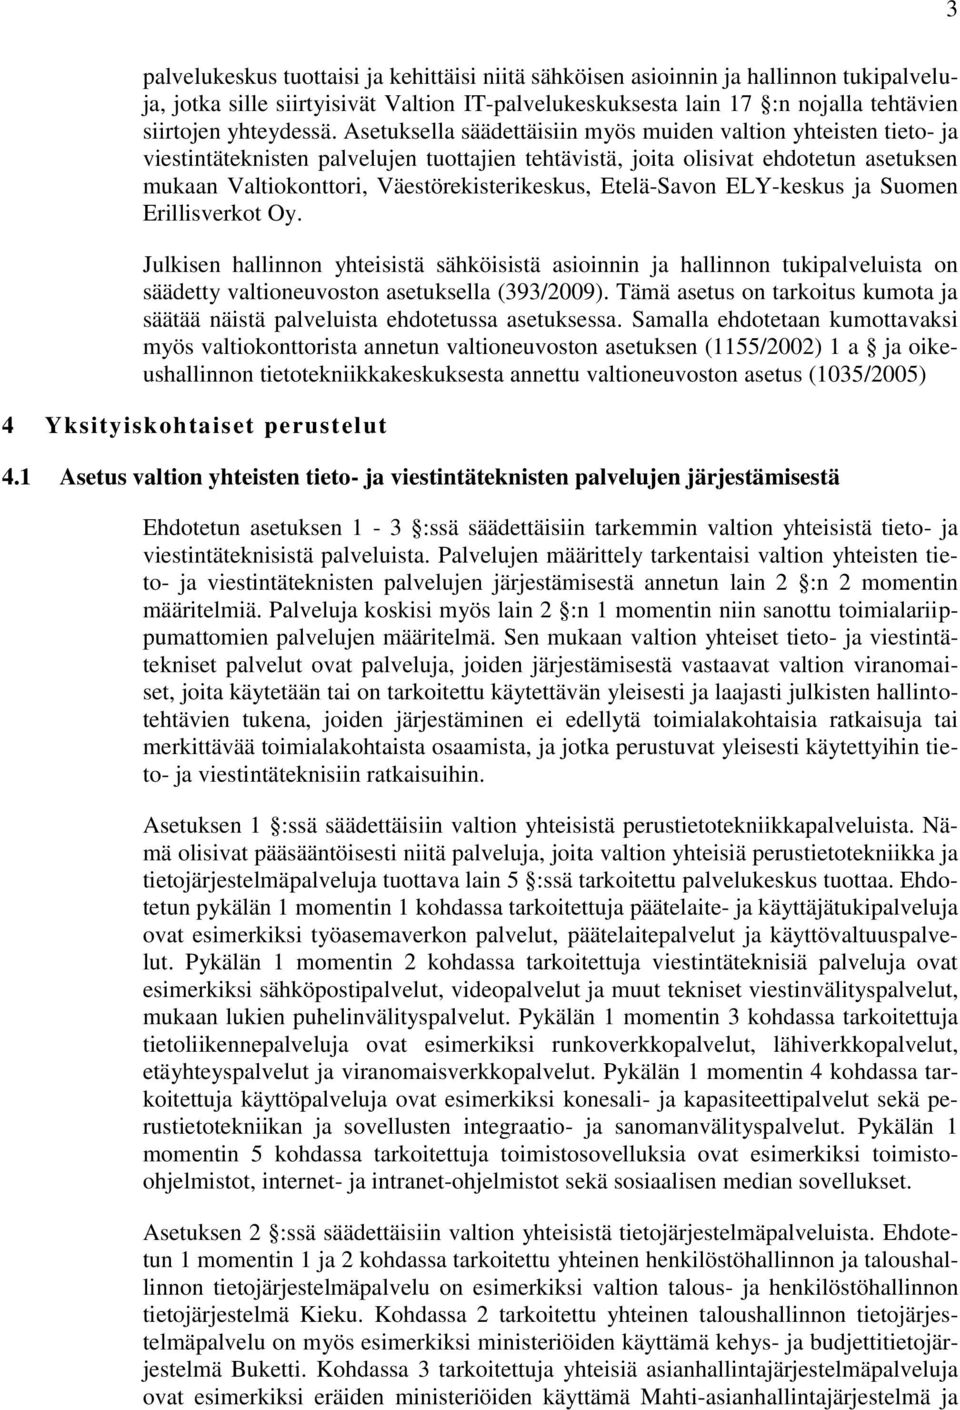 Etelä-Savon ELY-keskus ja Suomen Erillisverkot Oy. Julkisen hallinnon yhteisistä sähköisistä asioinnin ja hallinnon tukipalveluista on säädetty valtioneuvoston asetuksella (393/2009).